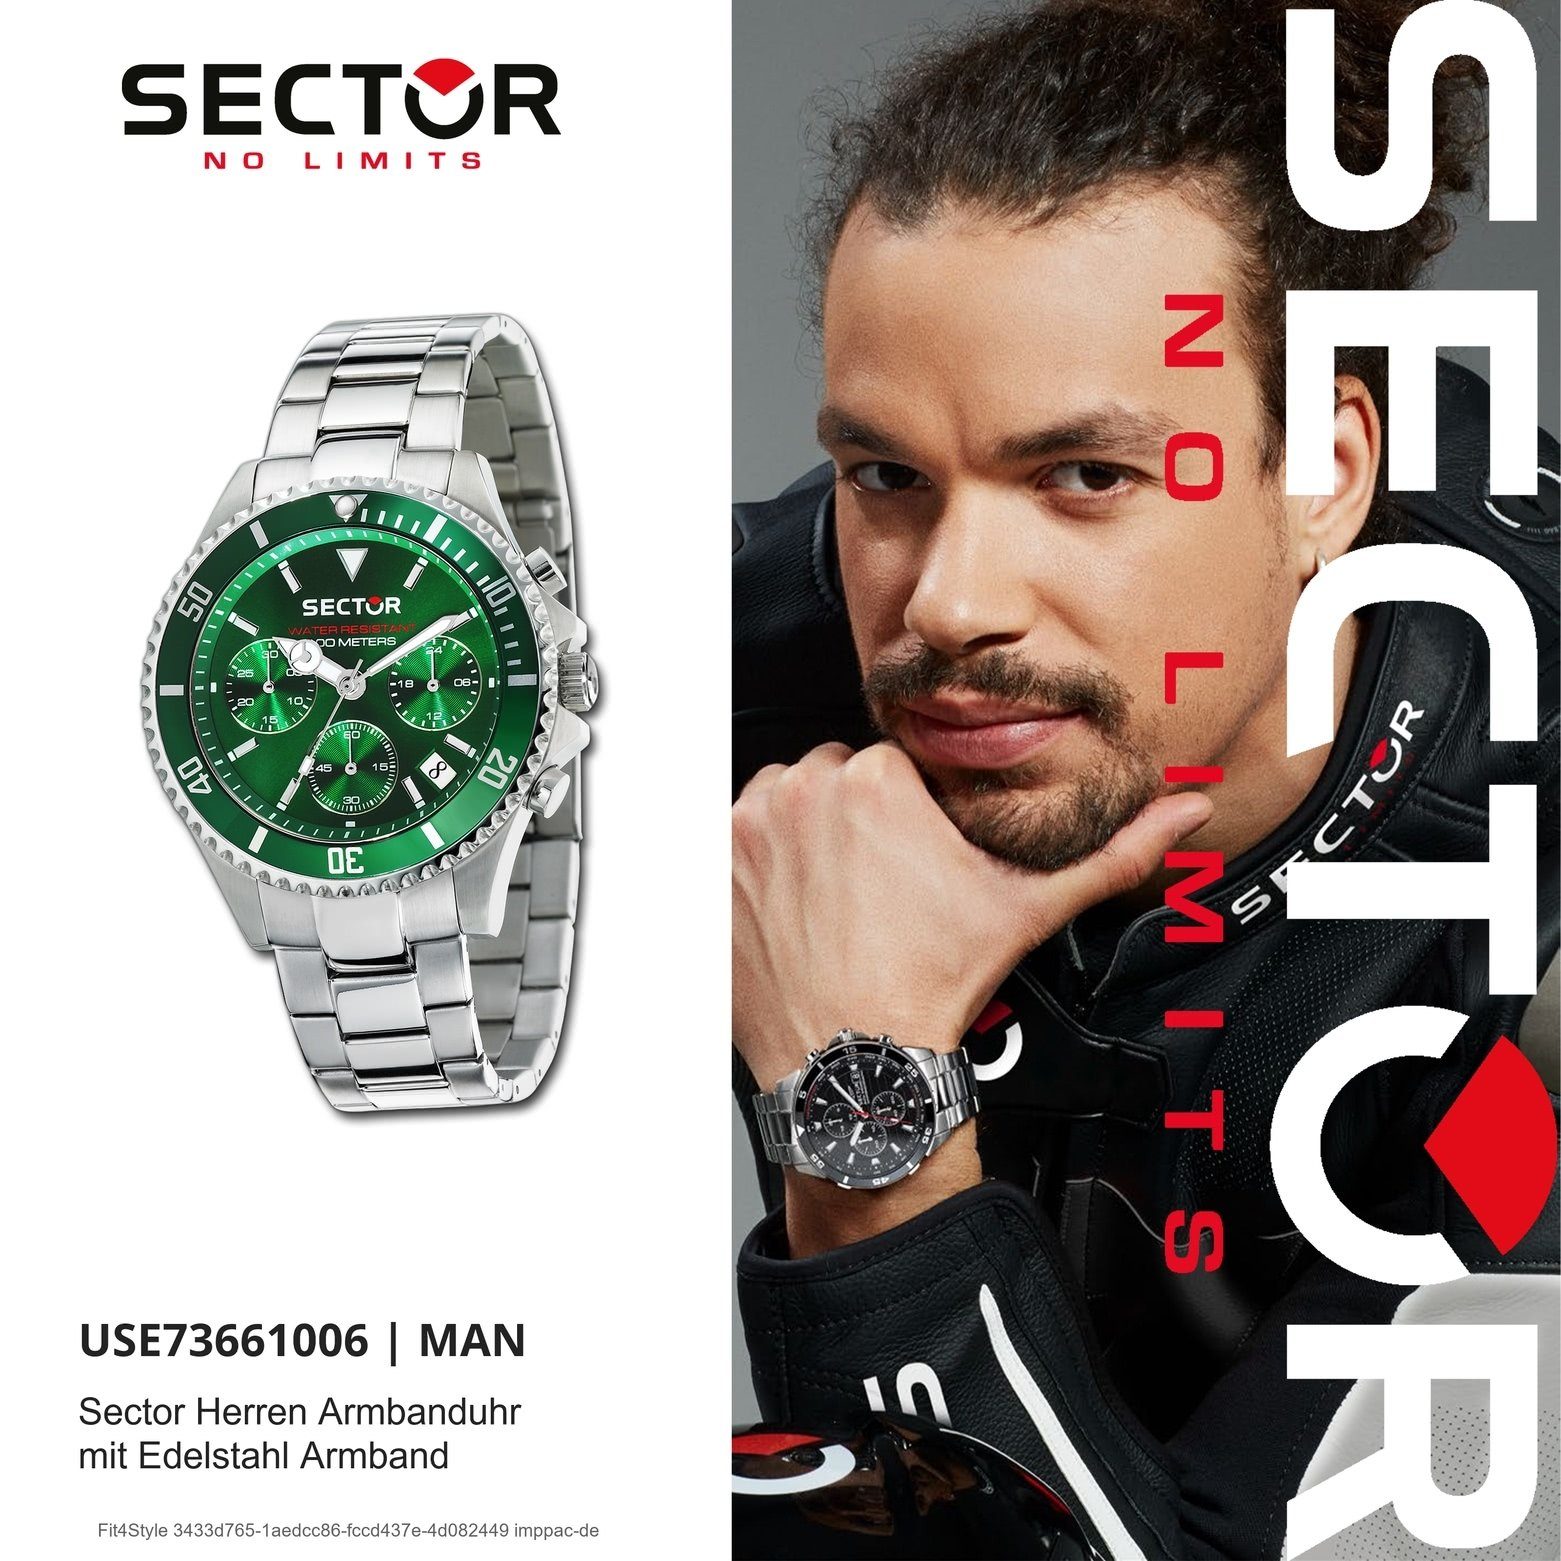 Sector Chronograph Herren silber, Sector Armbanduhr groß Fashion Chrono, rund, Edelstahlarmband (42mm), Herren Armbanduhr